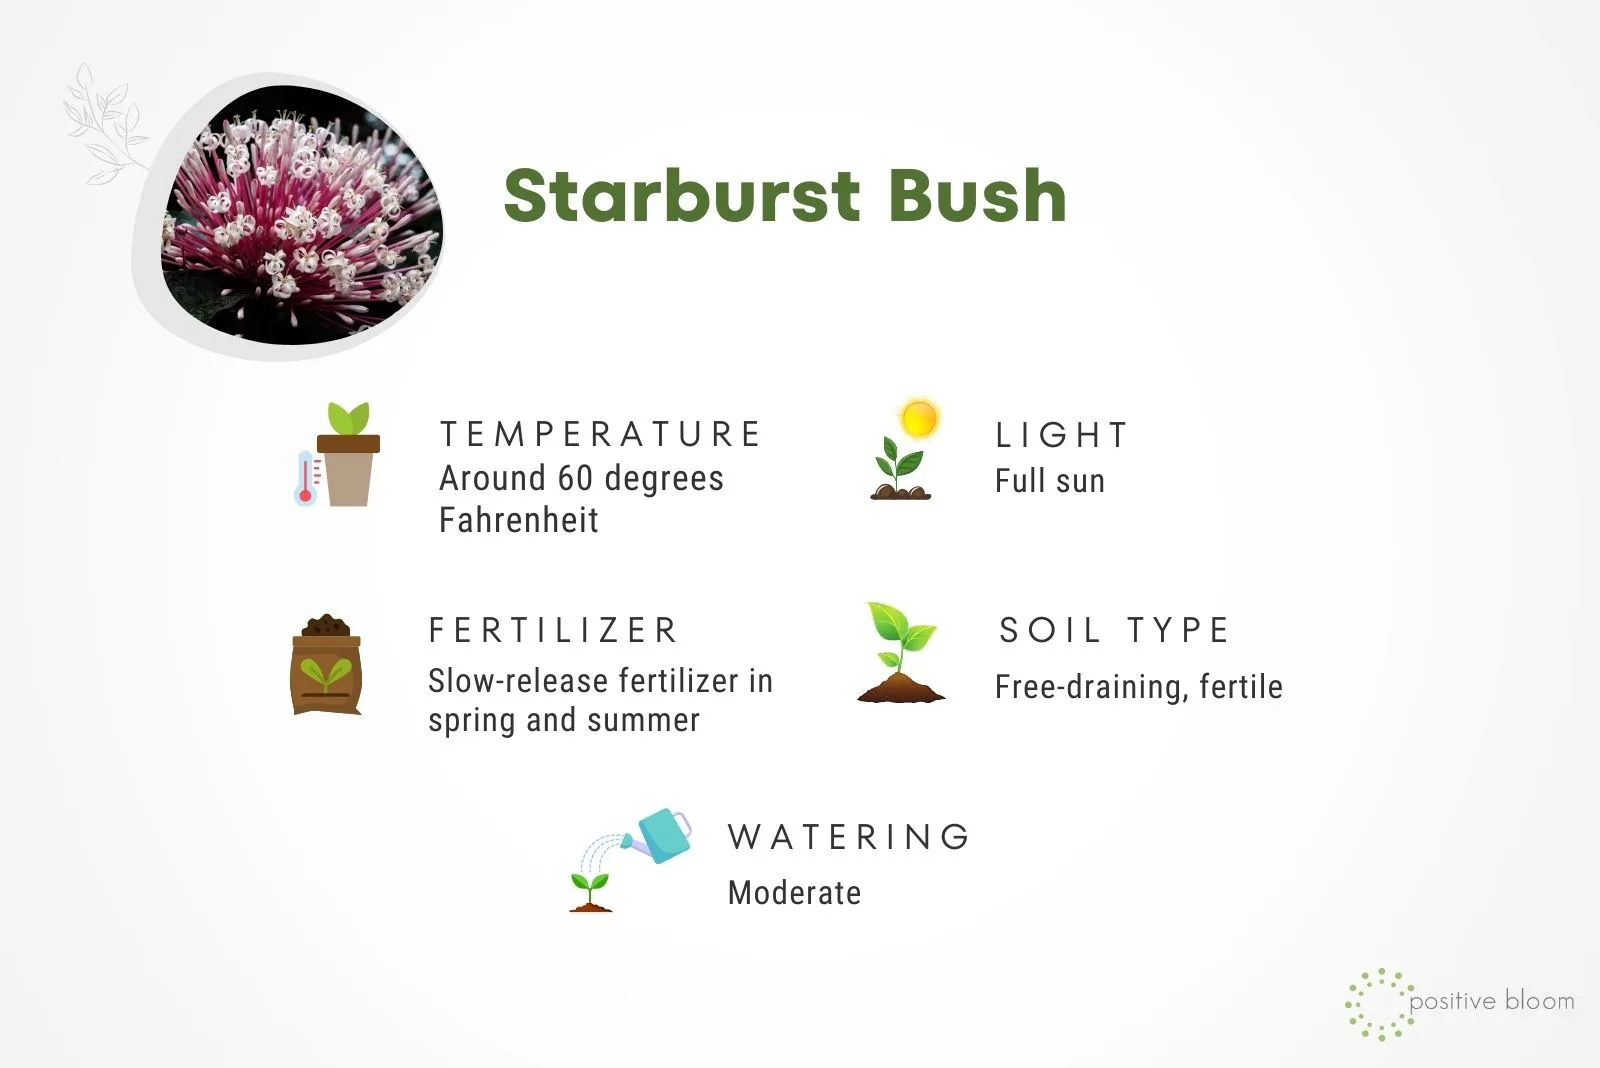 Starburst Bush